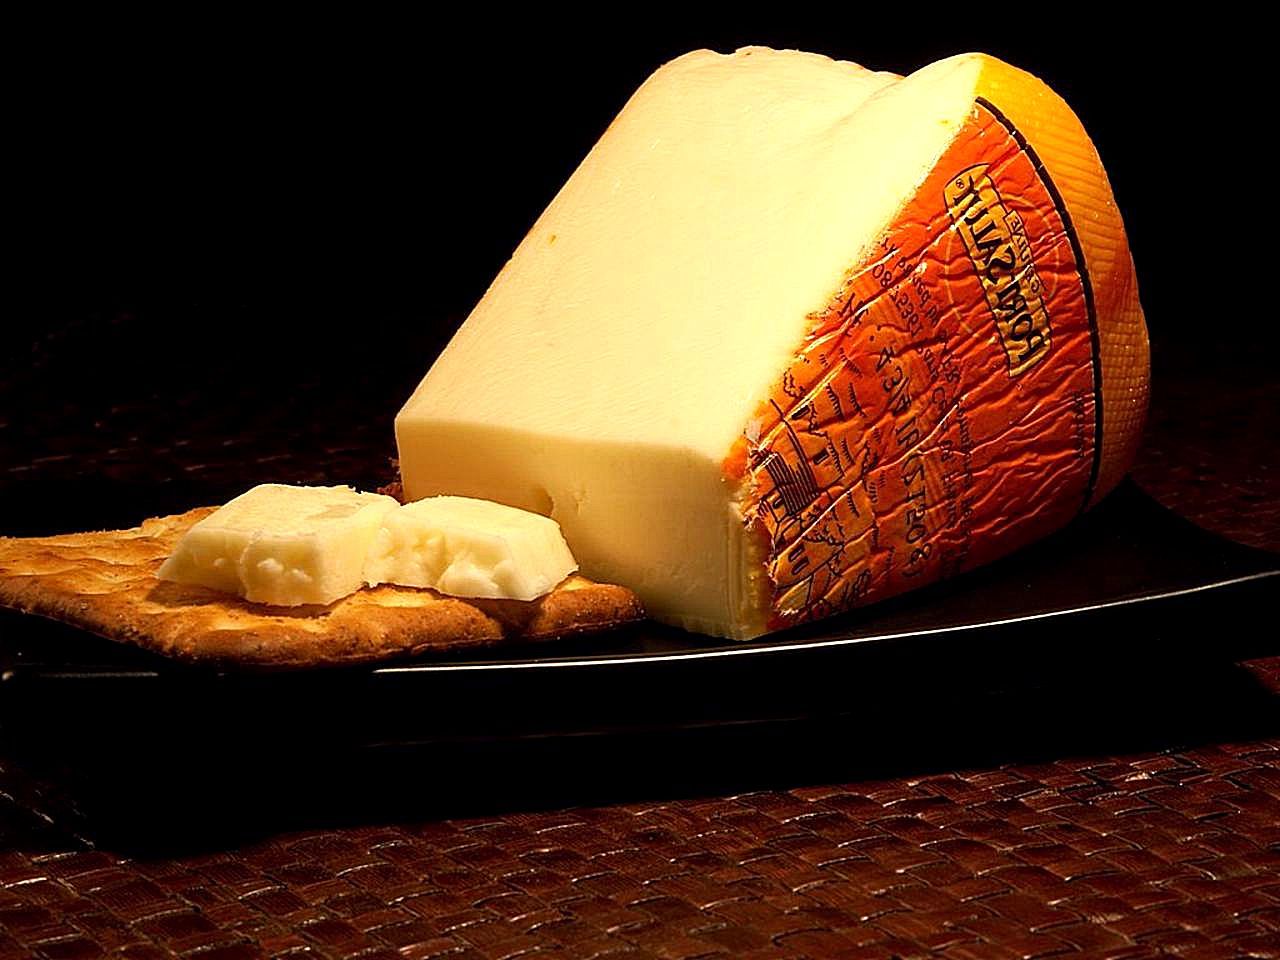 le port salut premier nom donné au fromage